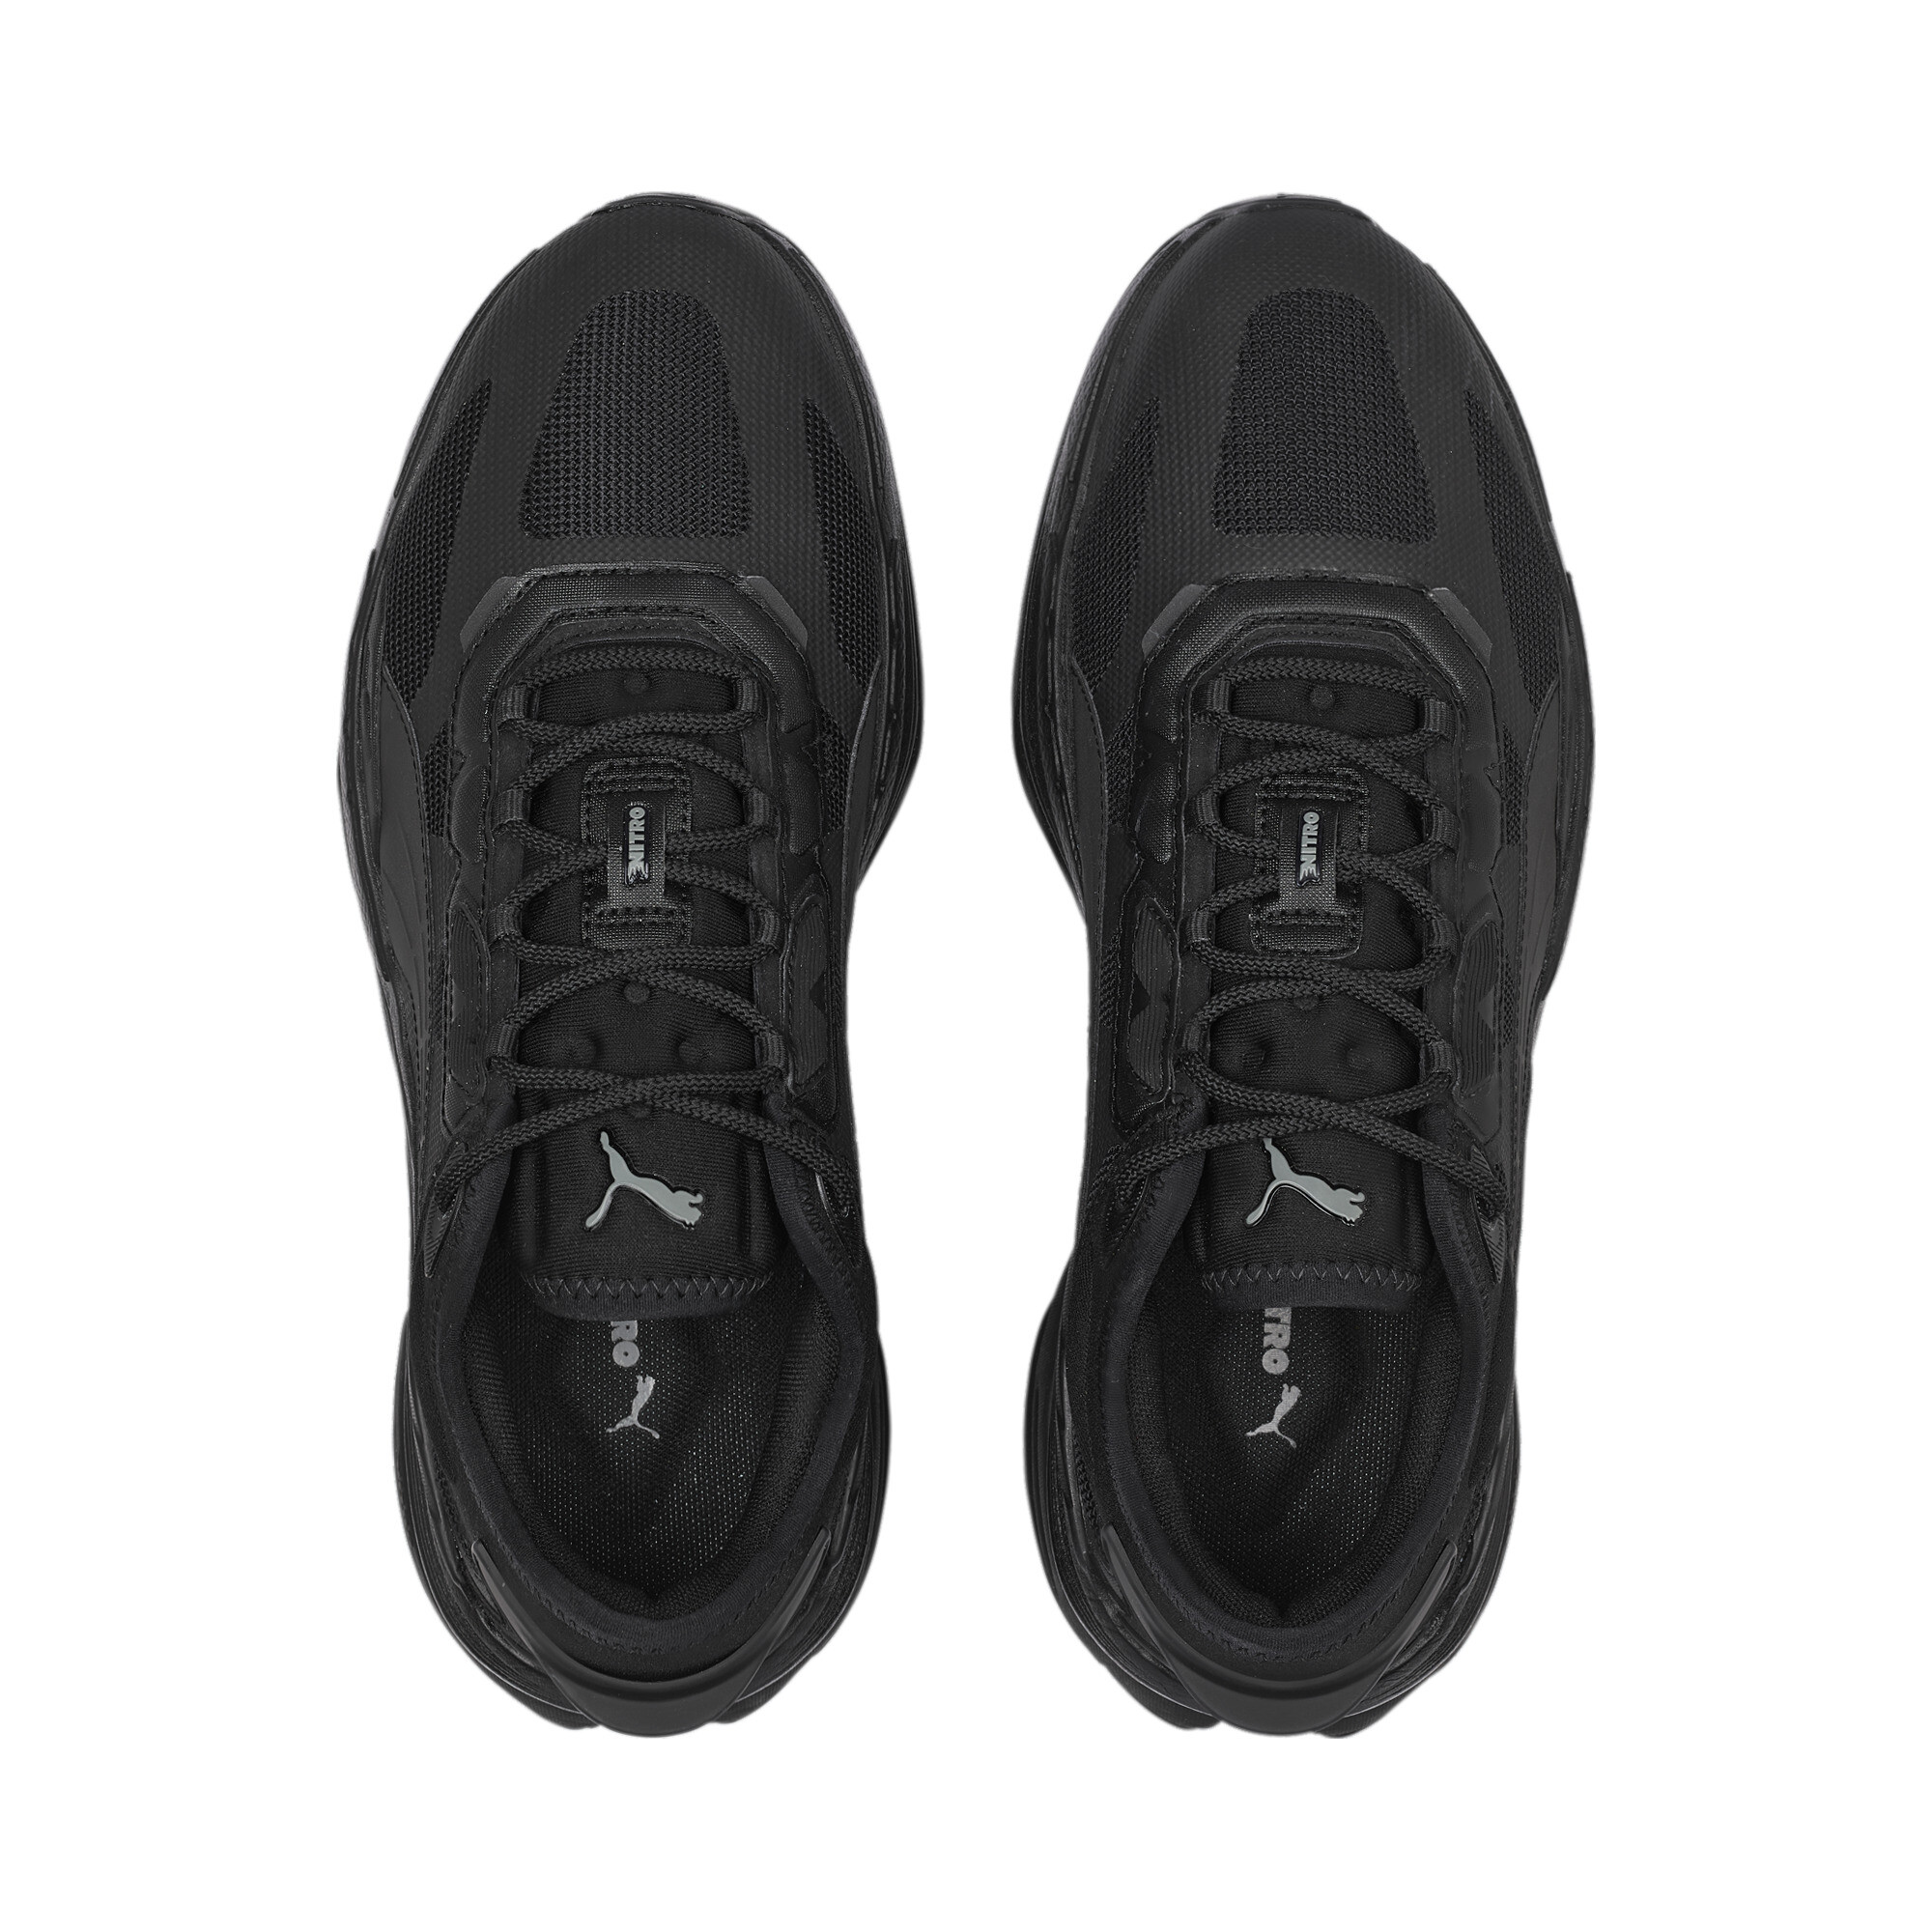 Men's PUMA Extent Nitro Mono Sneakers In Black, Size EU 38